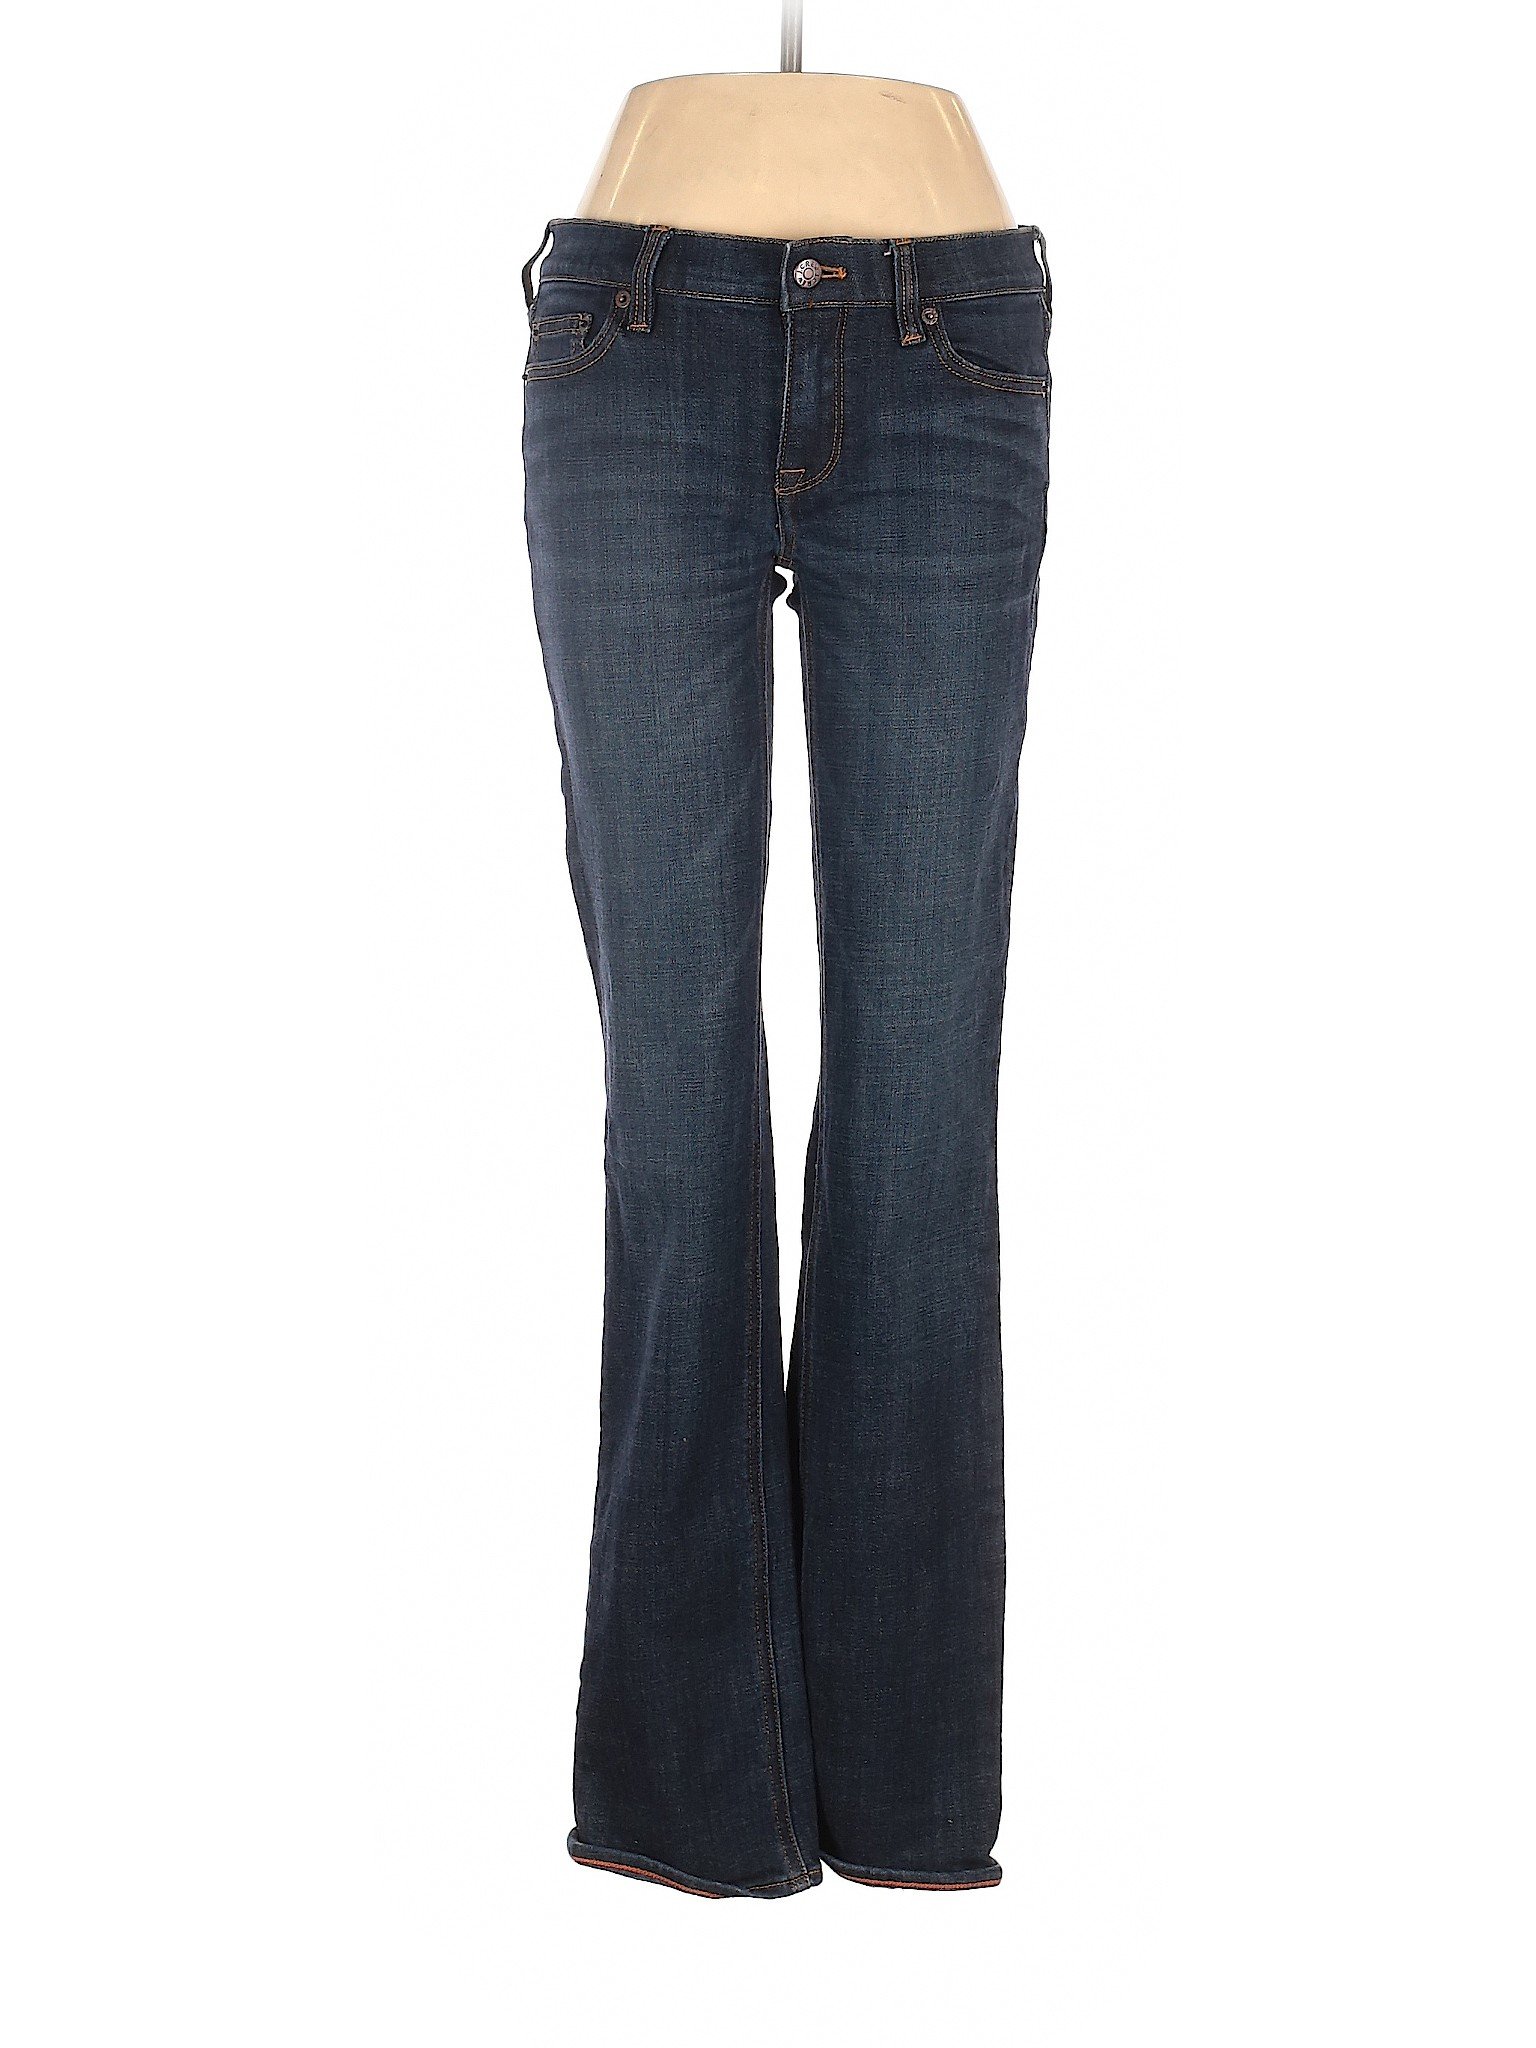 J.Crew Factory Store Women Blue Jeans 26W | eBay